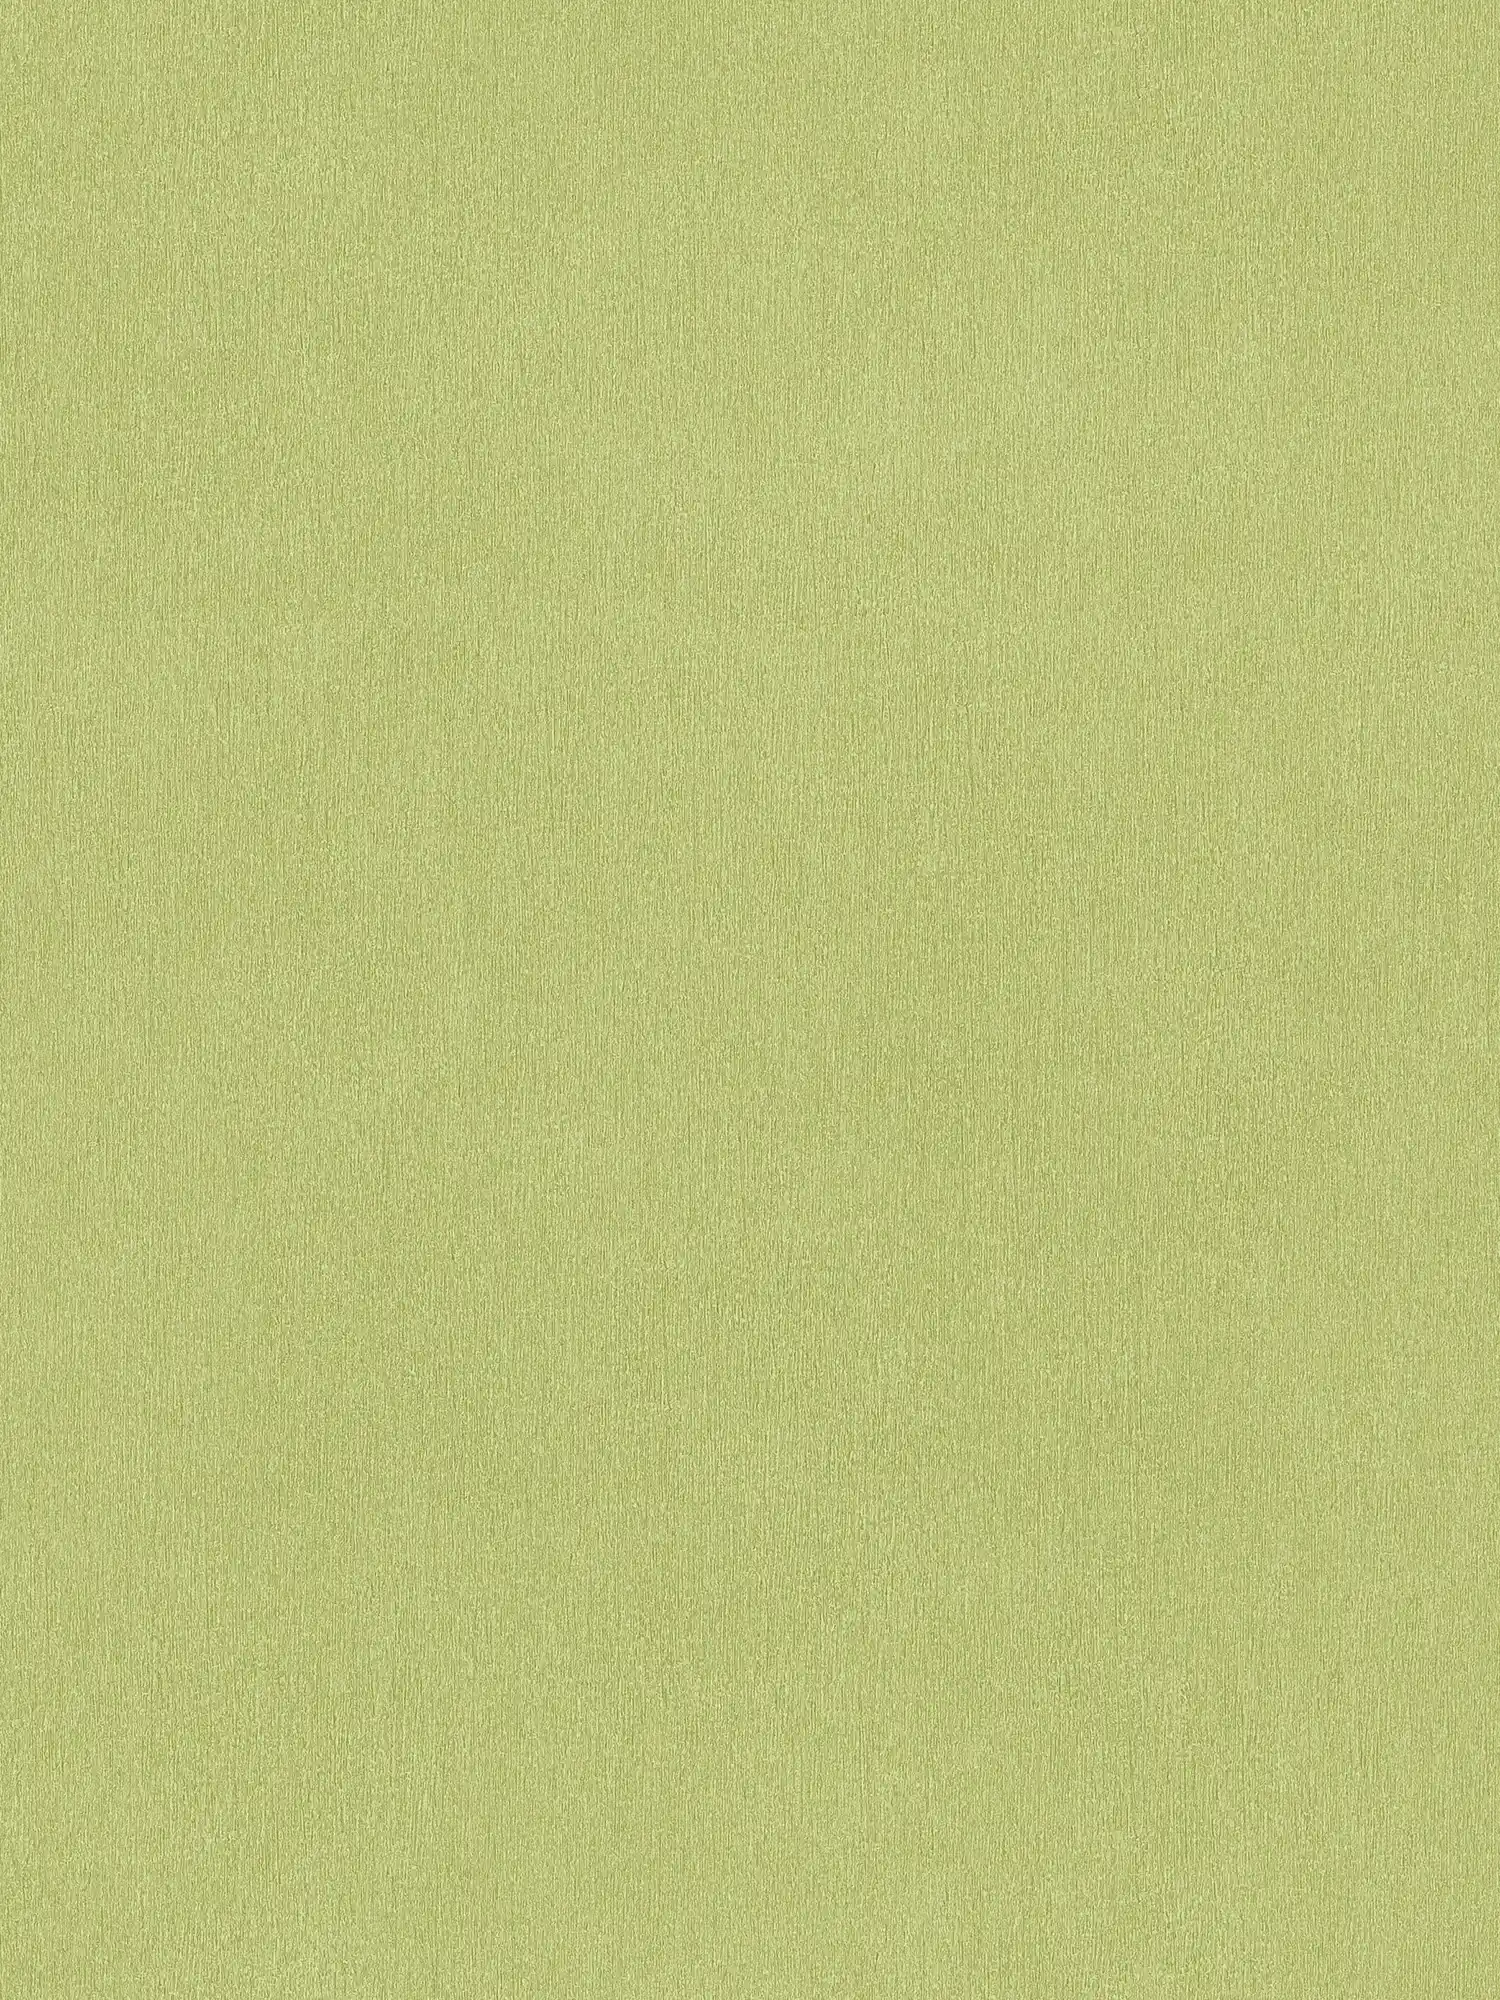 Tapete Hellgrün einfarbig Limette Grün mit Farbschraffur
